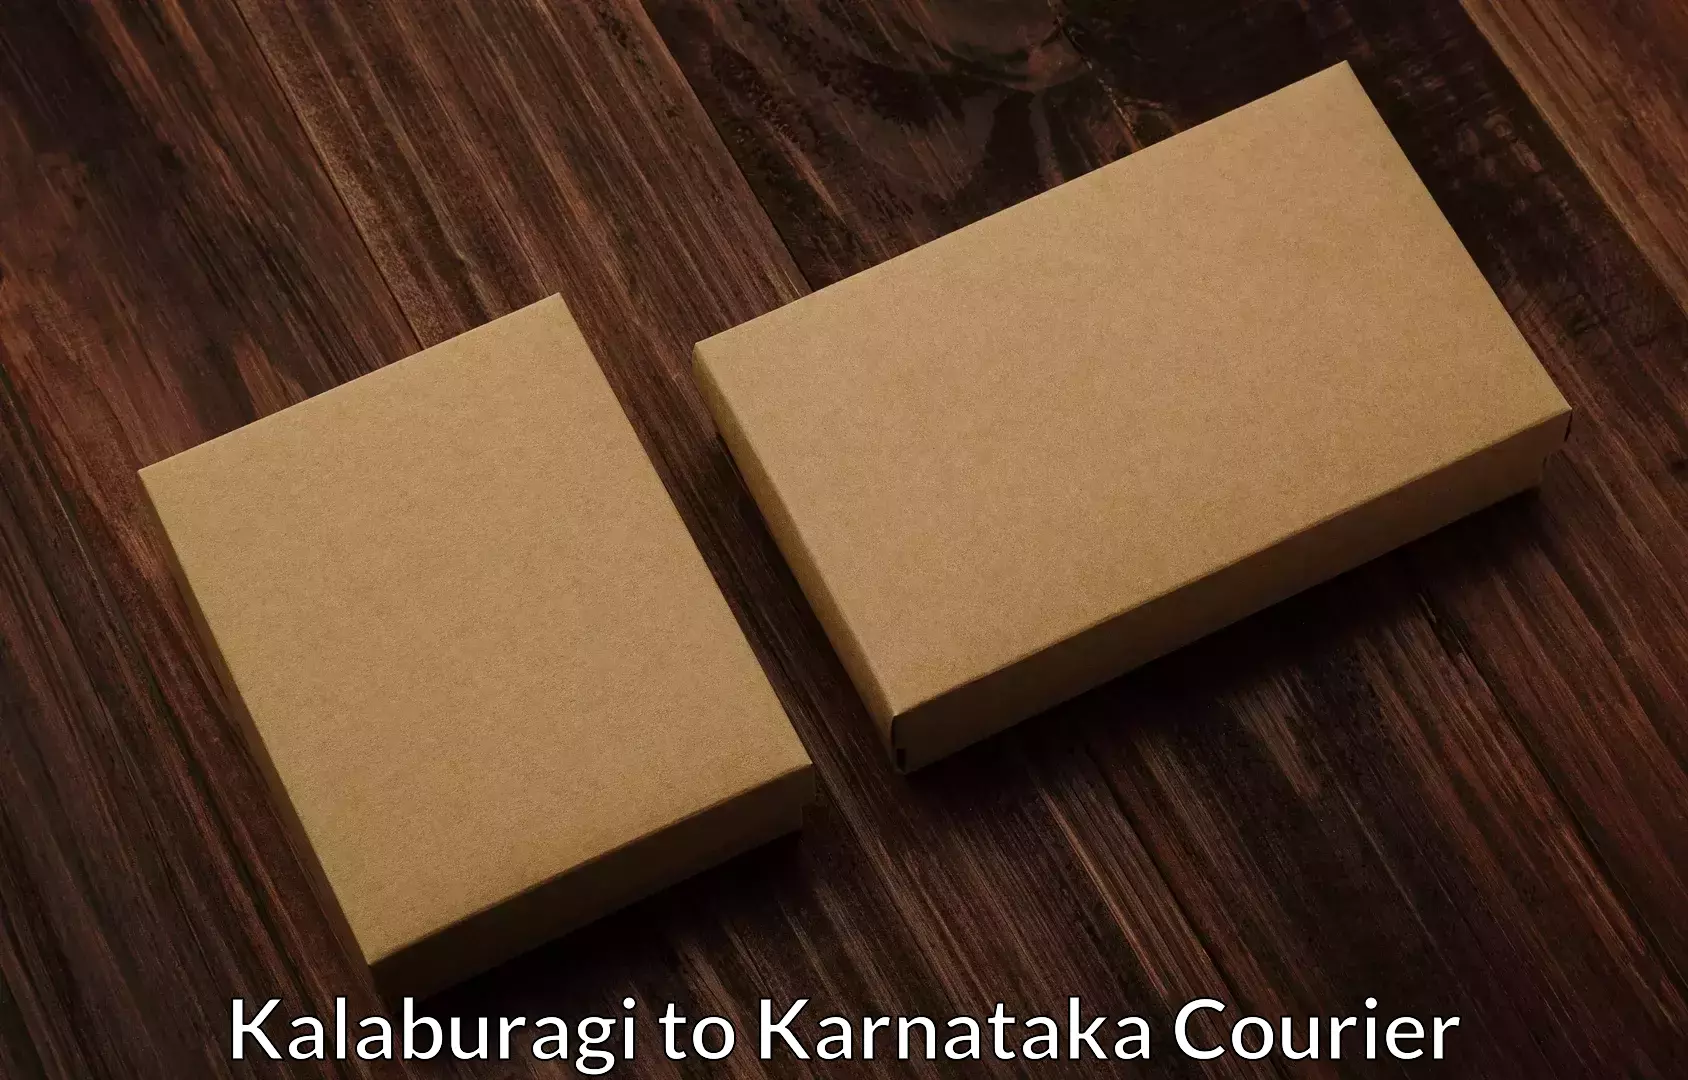 Household moving experts Kalaburagi to Chikkamagaluru